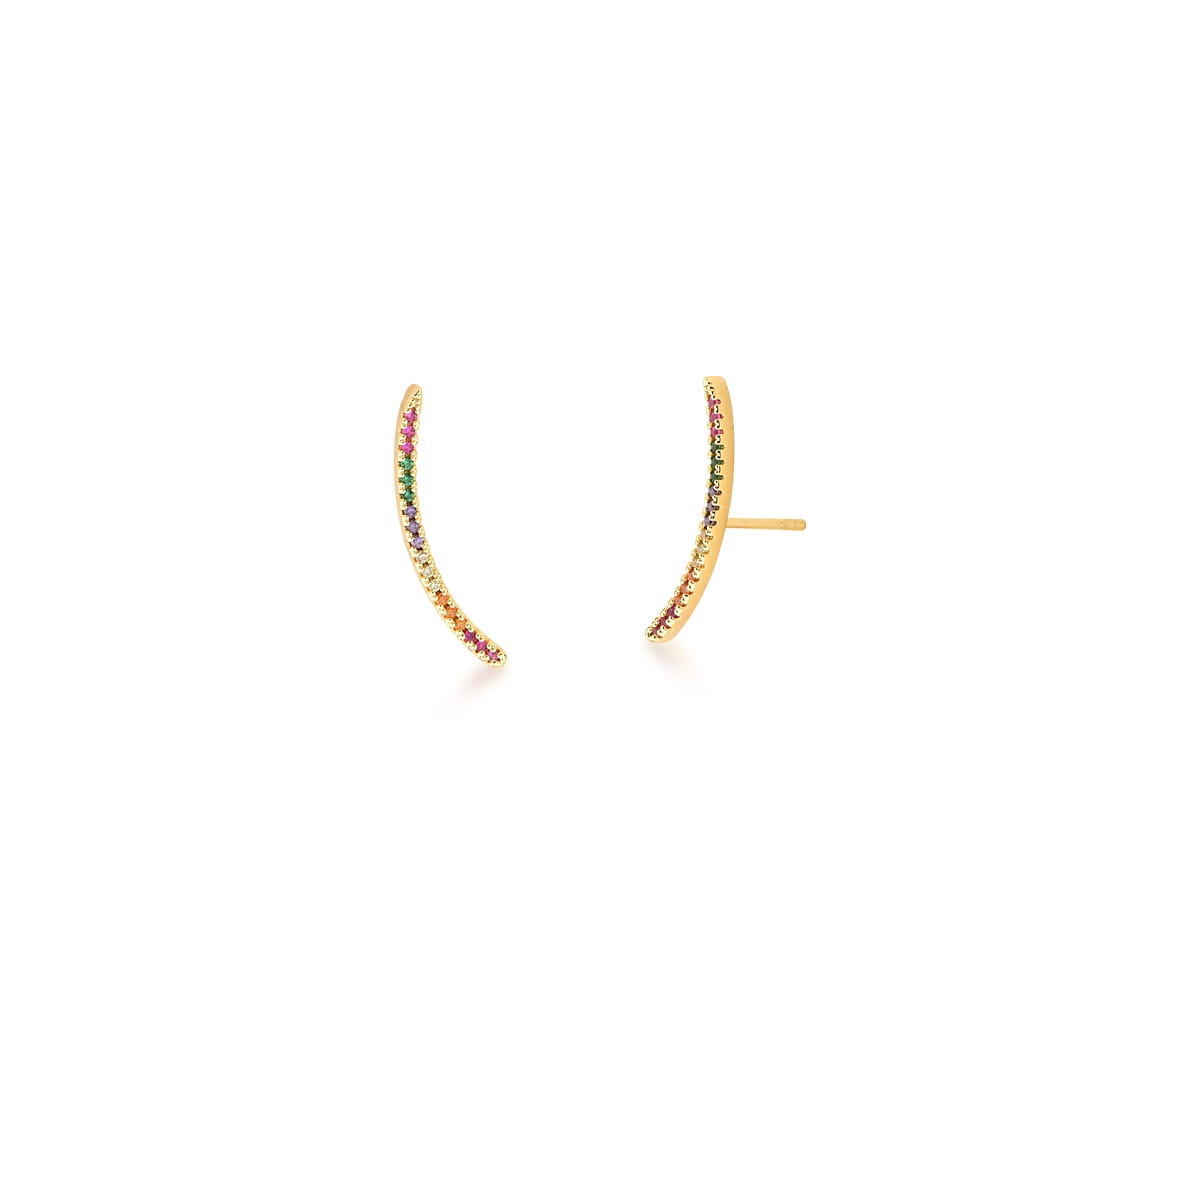 Brinco Ear Cuff Curvo com Zircônias Coloridas Banhado a Ouro 18k